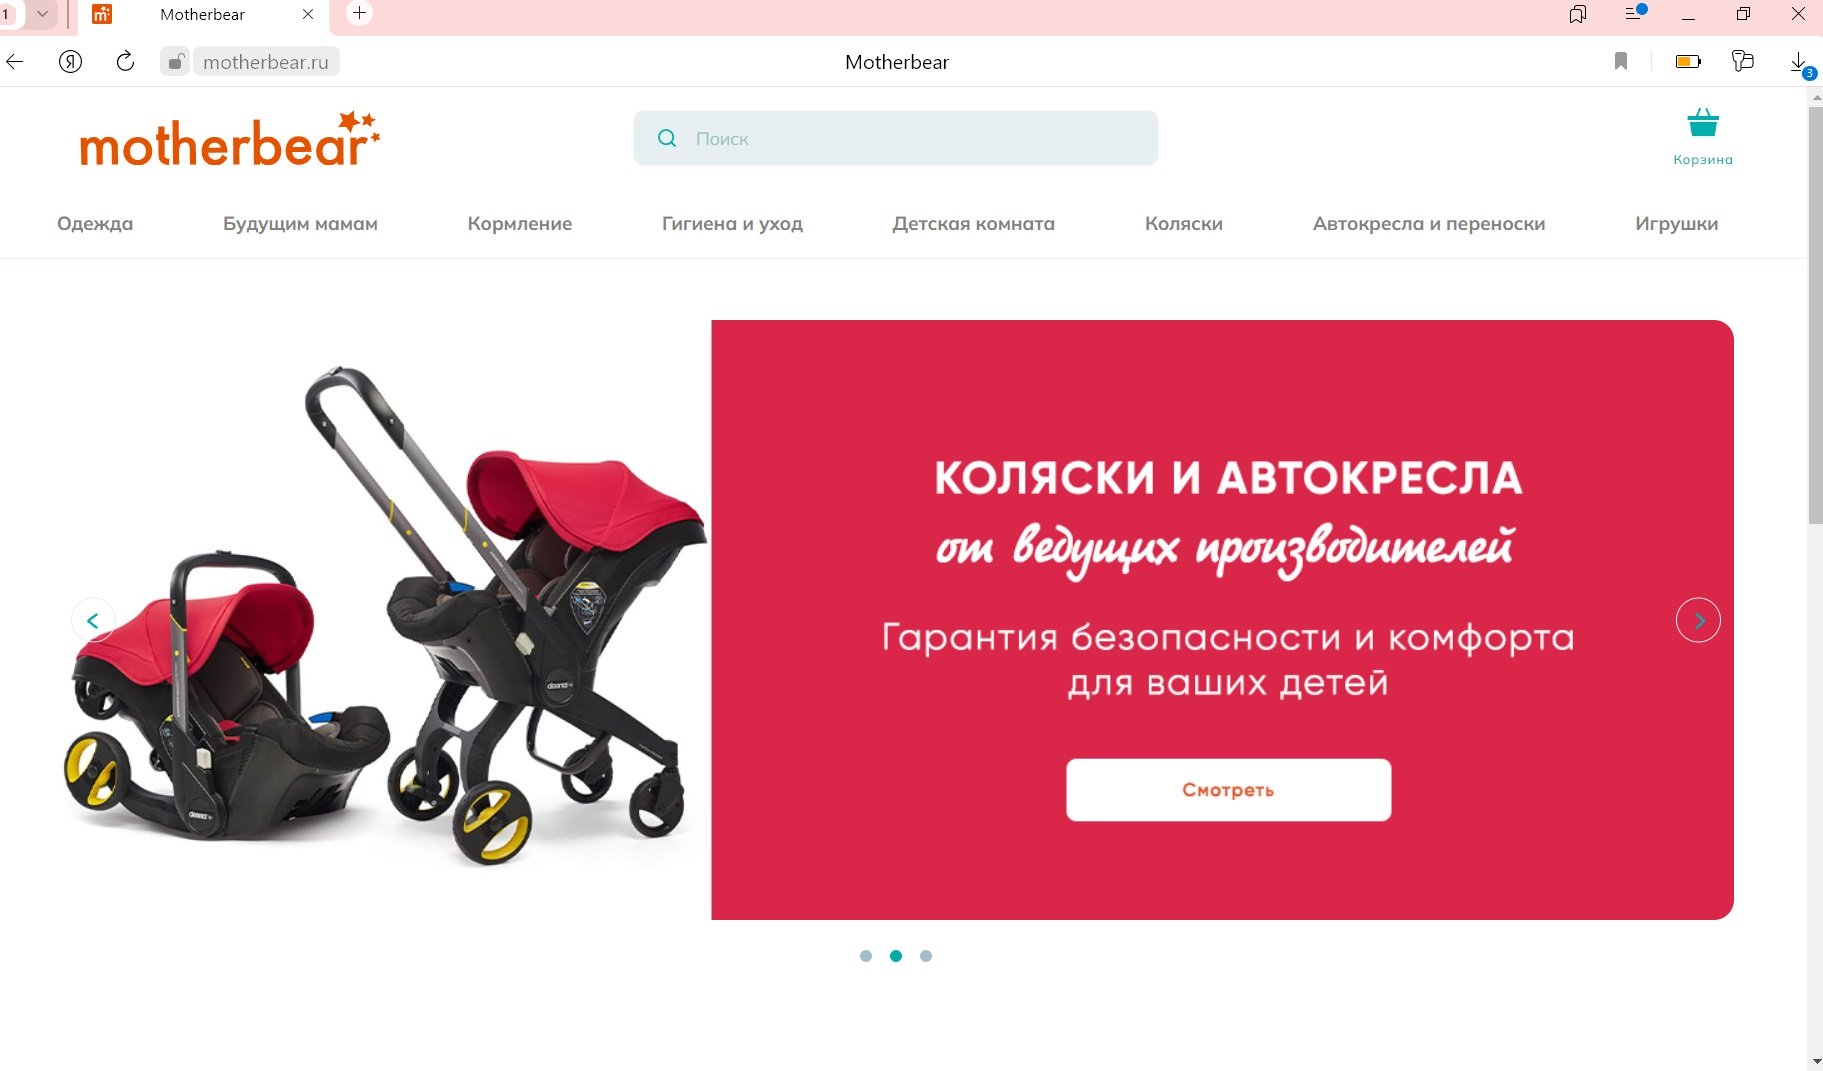 как выглядит сайт motherbear.ru